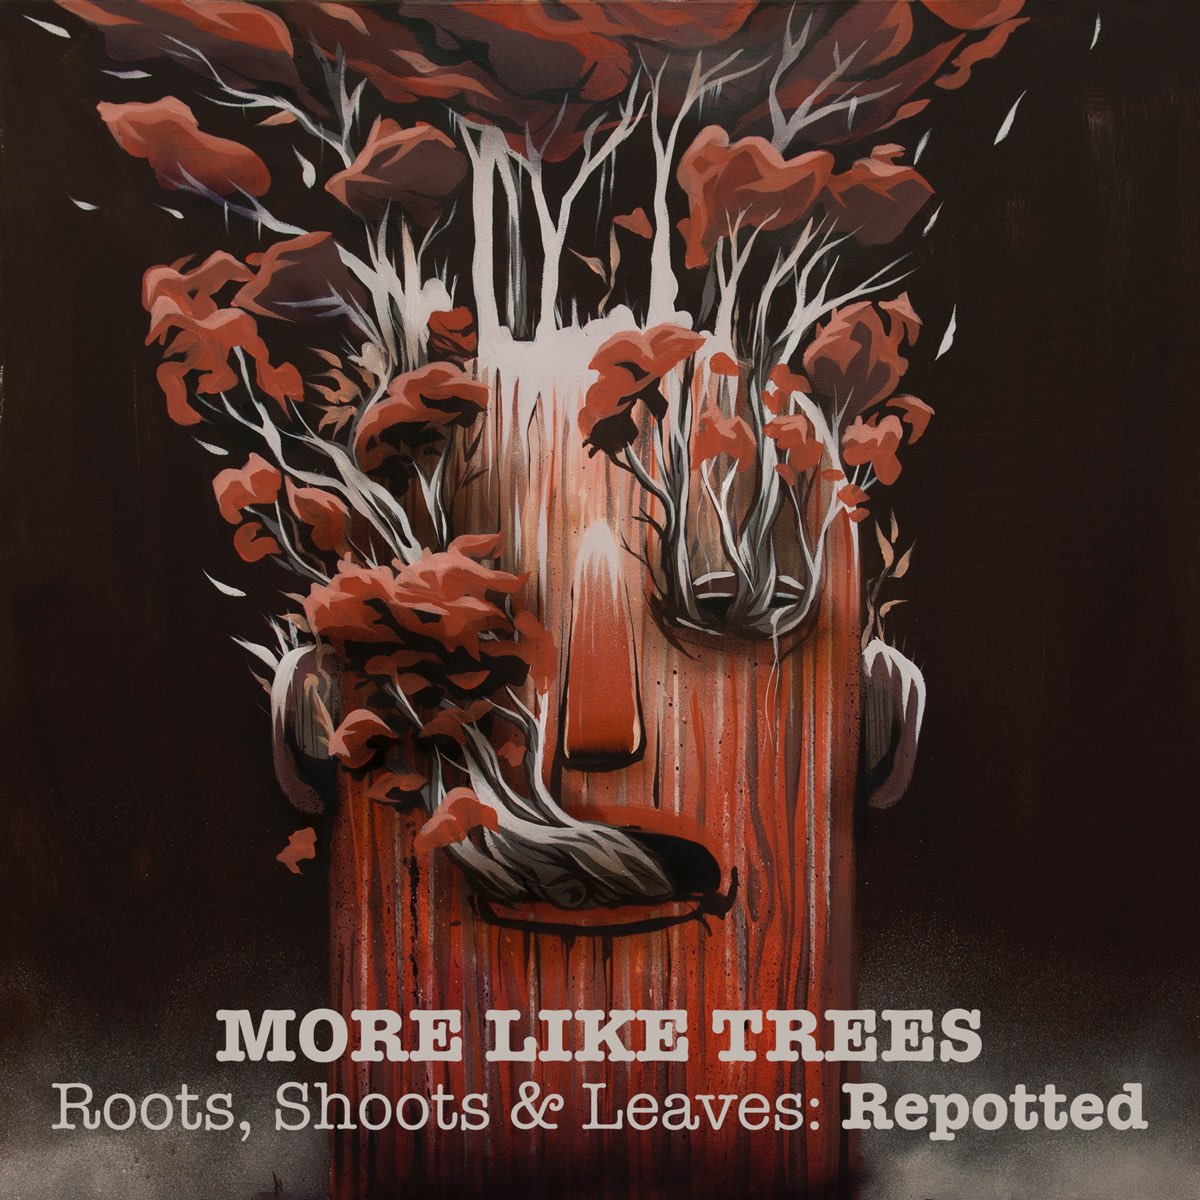 They like trees. Дерево исполнителей. Собака для обложки трека. More like Trees. Roots and shoots.